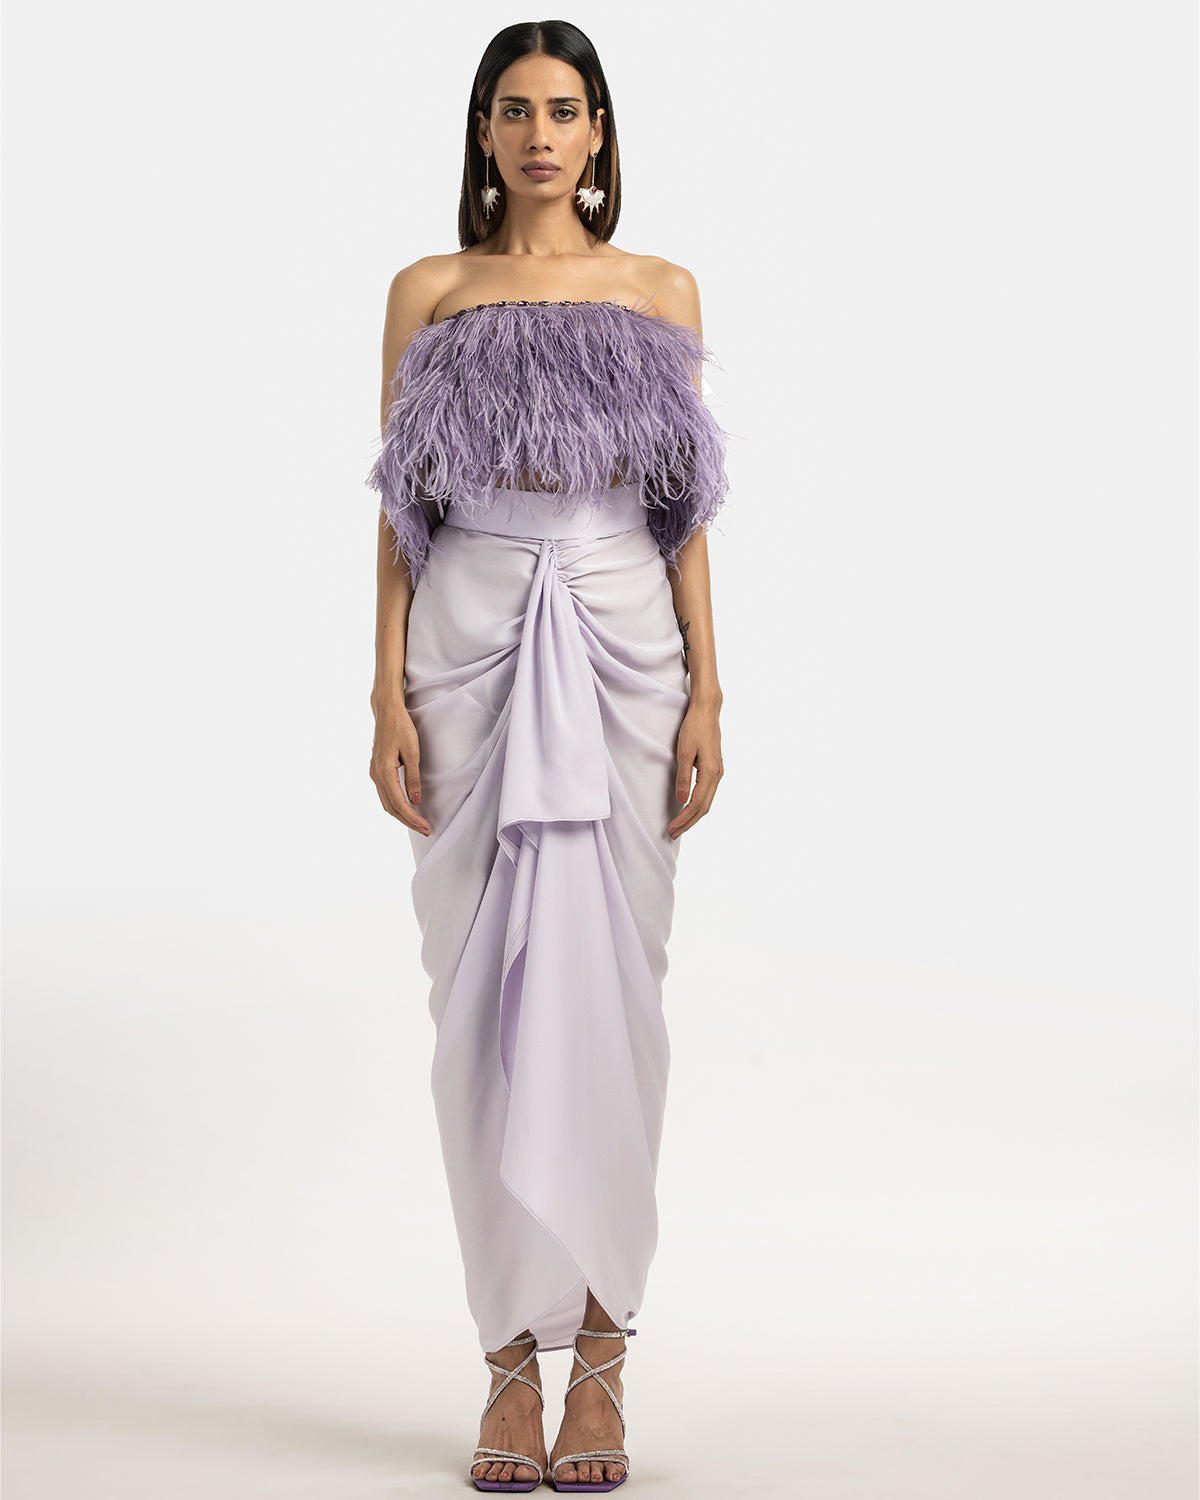 Feather Top And Samara Skirt Set